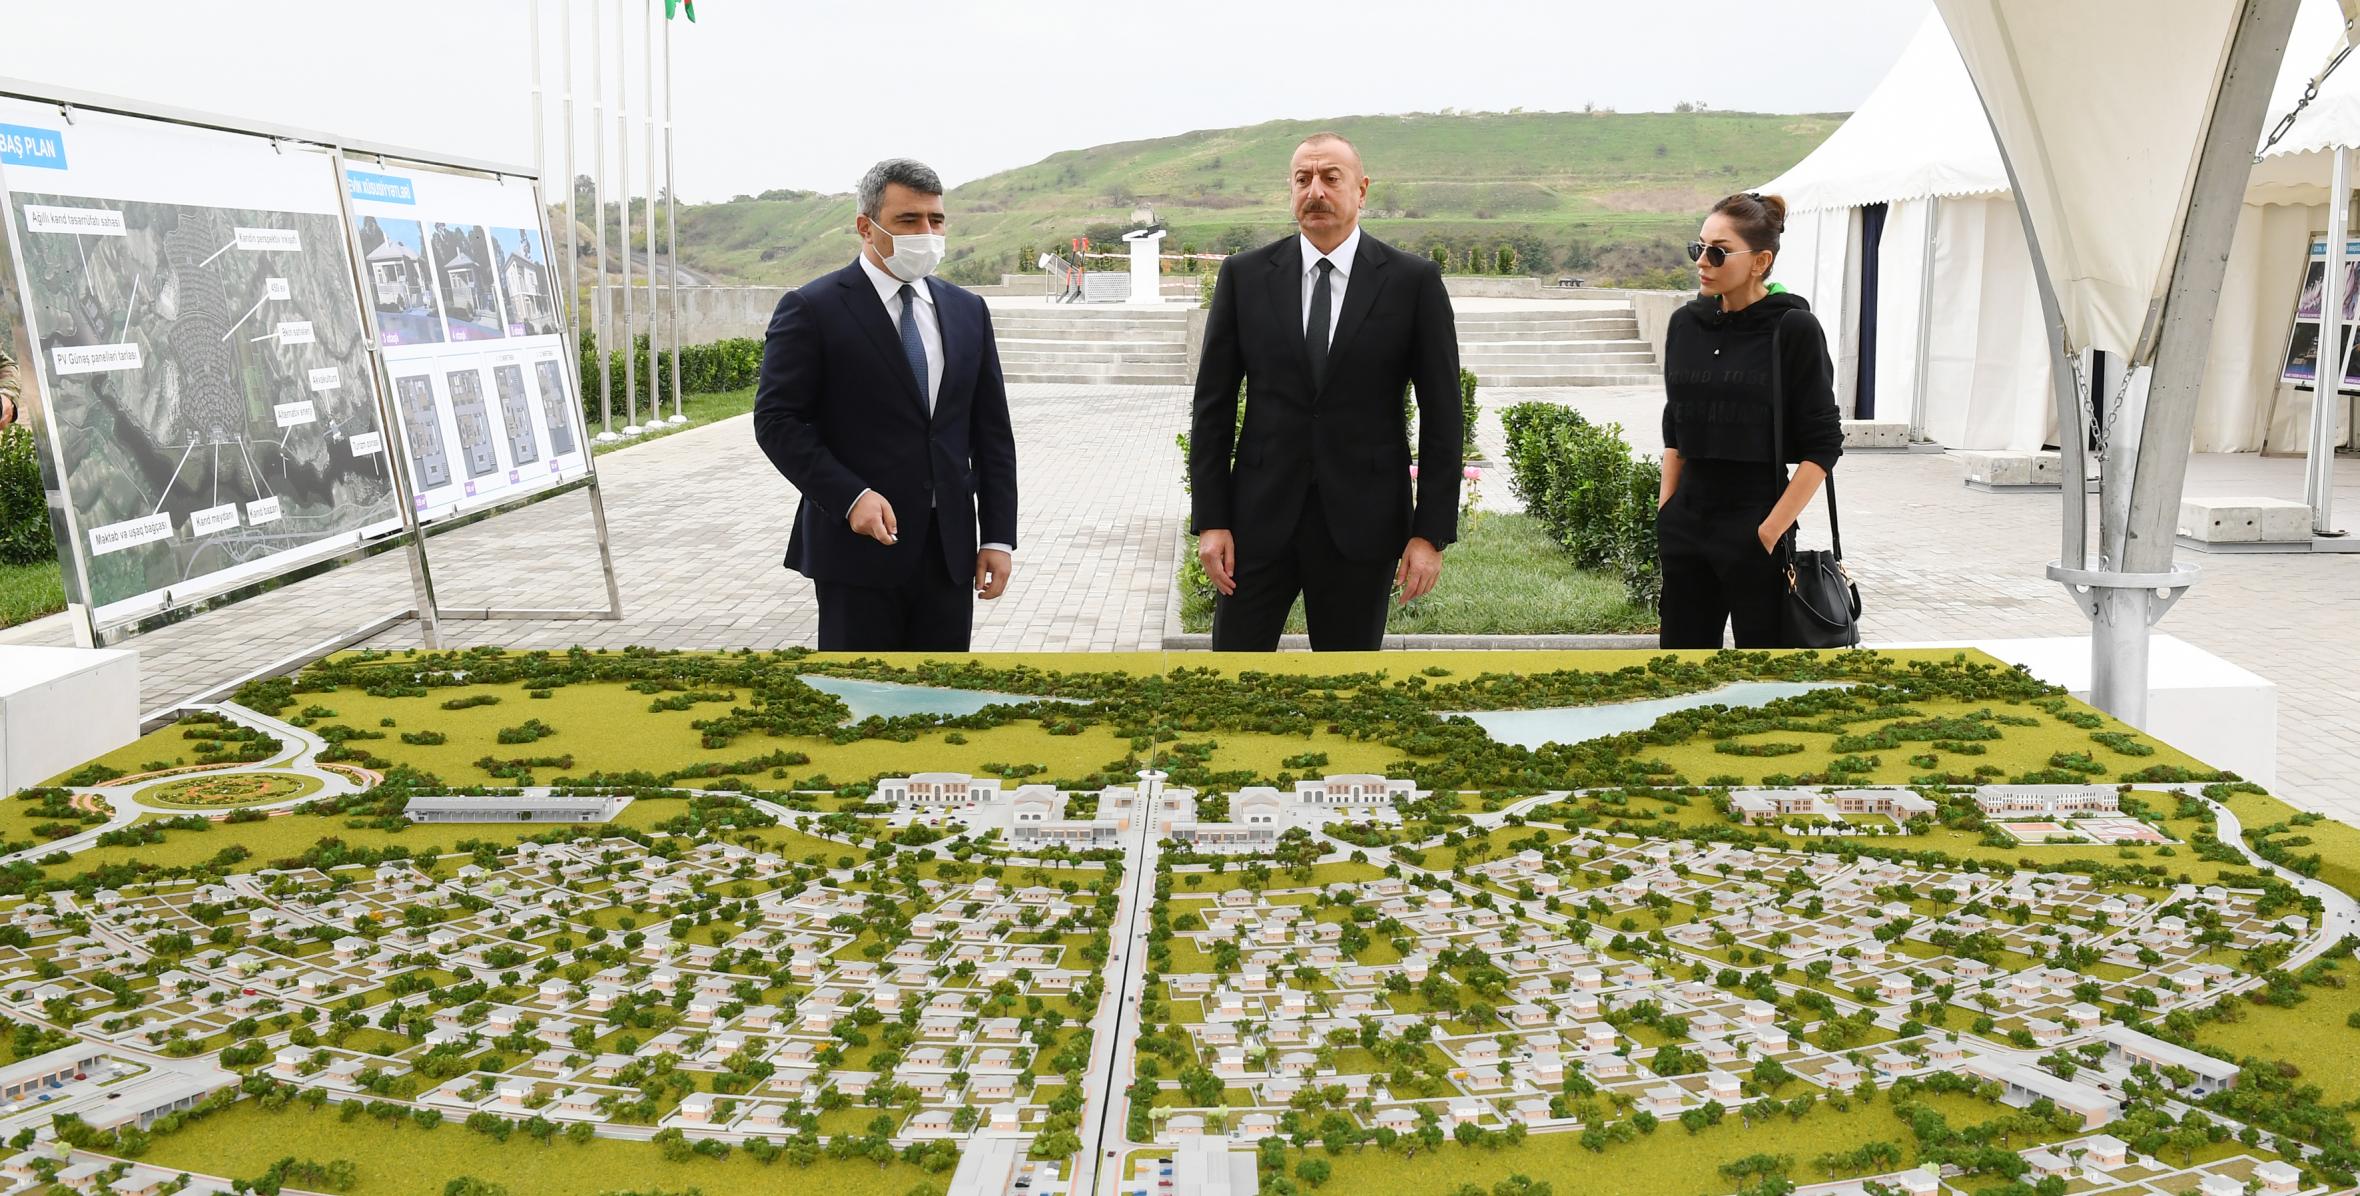 Ilham Aliyev laid foundation stone for “smart village” in Dovlatyarli village, Fuzuli district